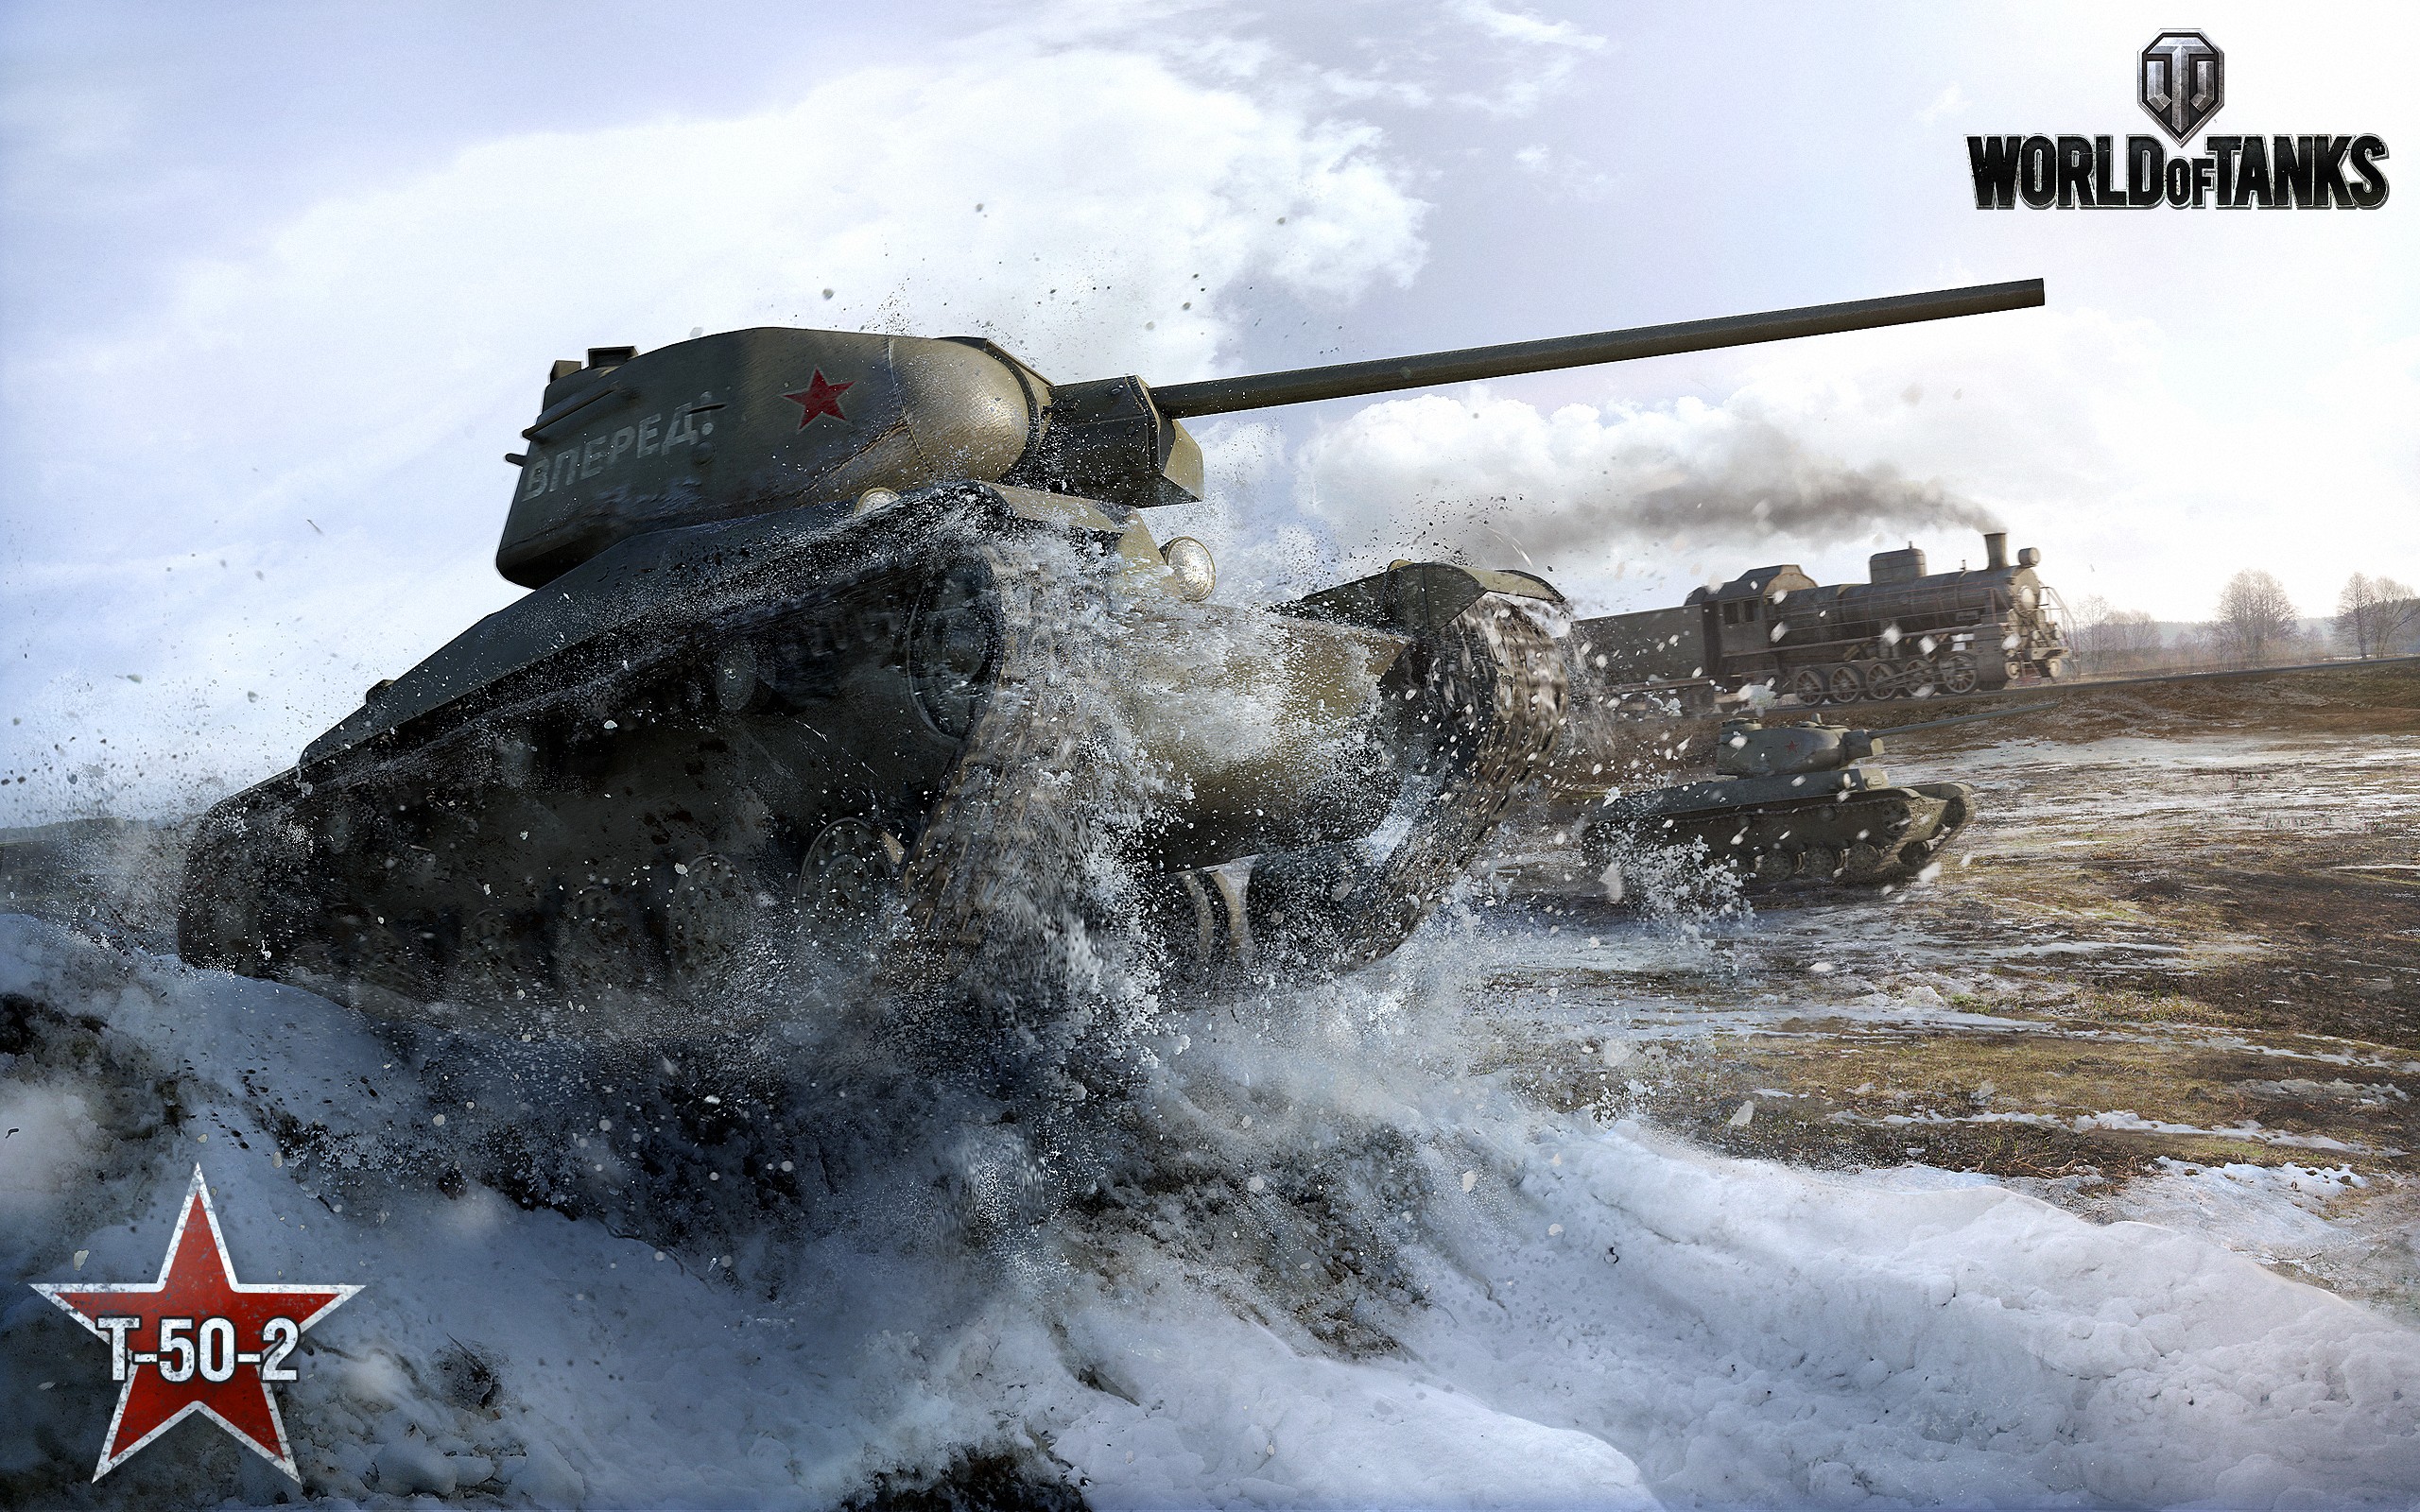 General 2560x1600 World of Tanks tank wargaming video games PC gaming video game art military military vehicle vehicle